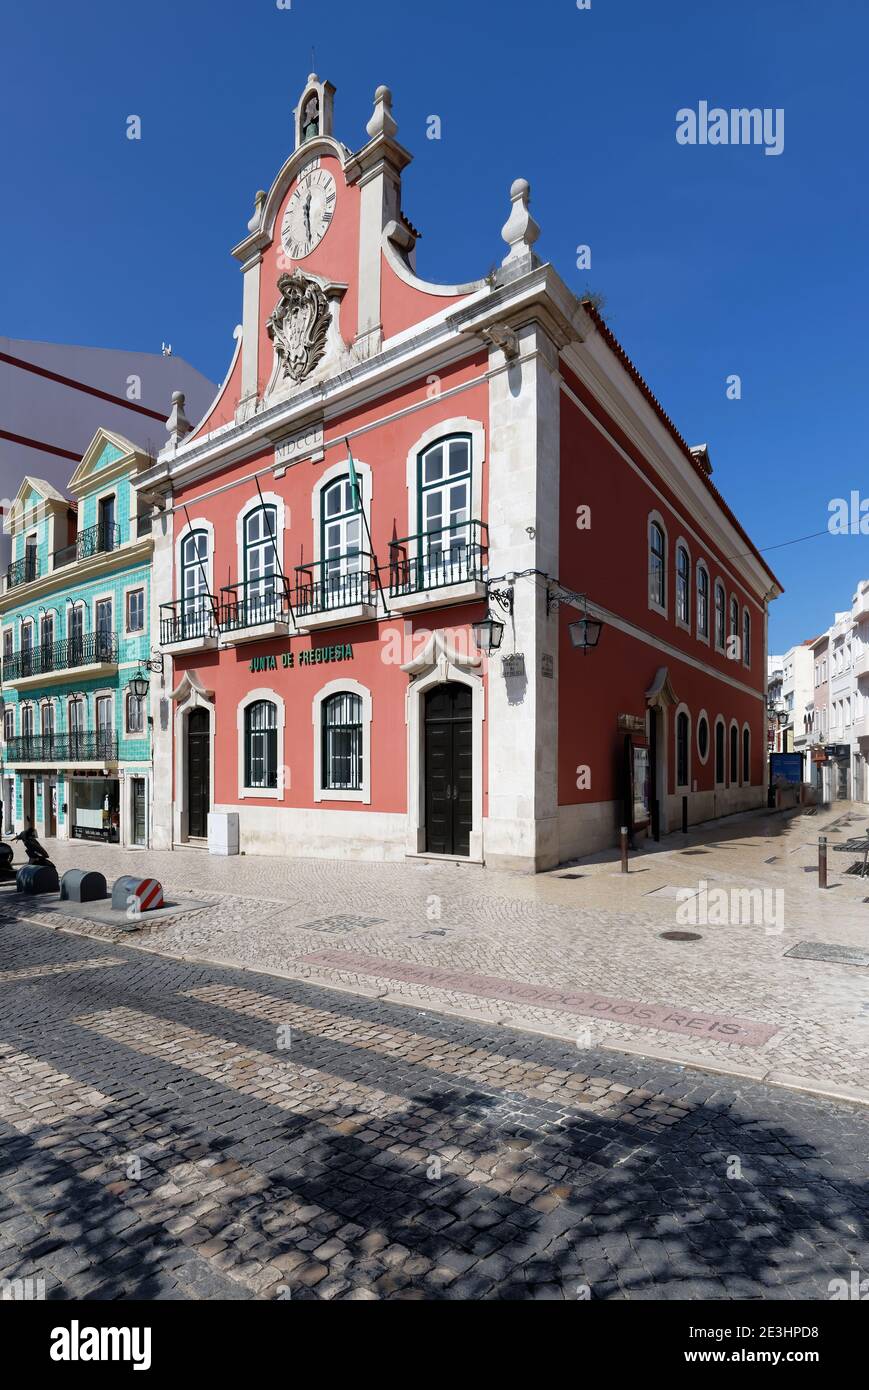 Former City hall or Junta da Fregueisa building, Republic Square, Caldas da Rainha, Estremadura, Portugal Stock Photo